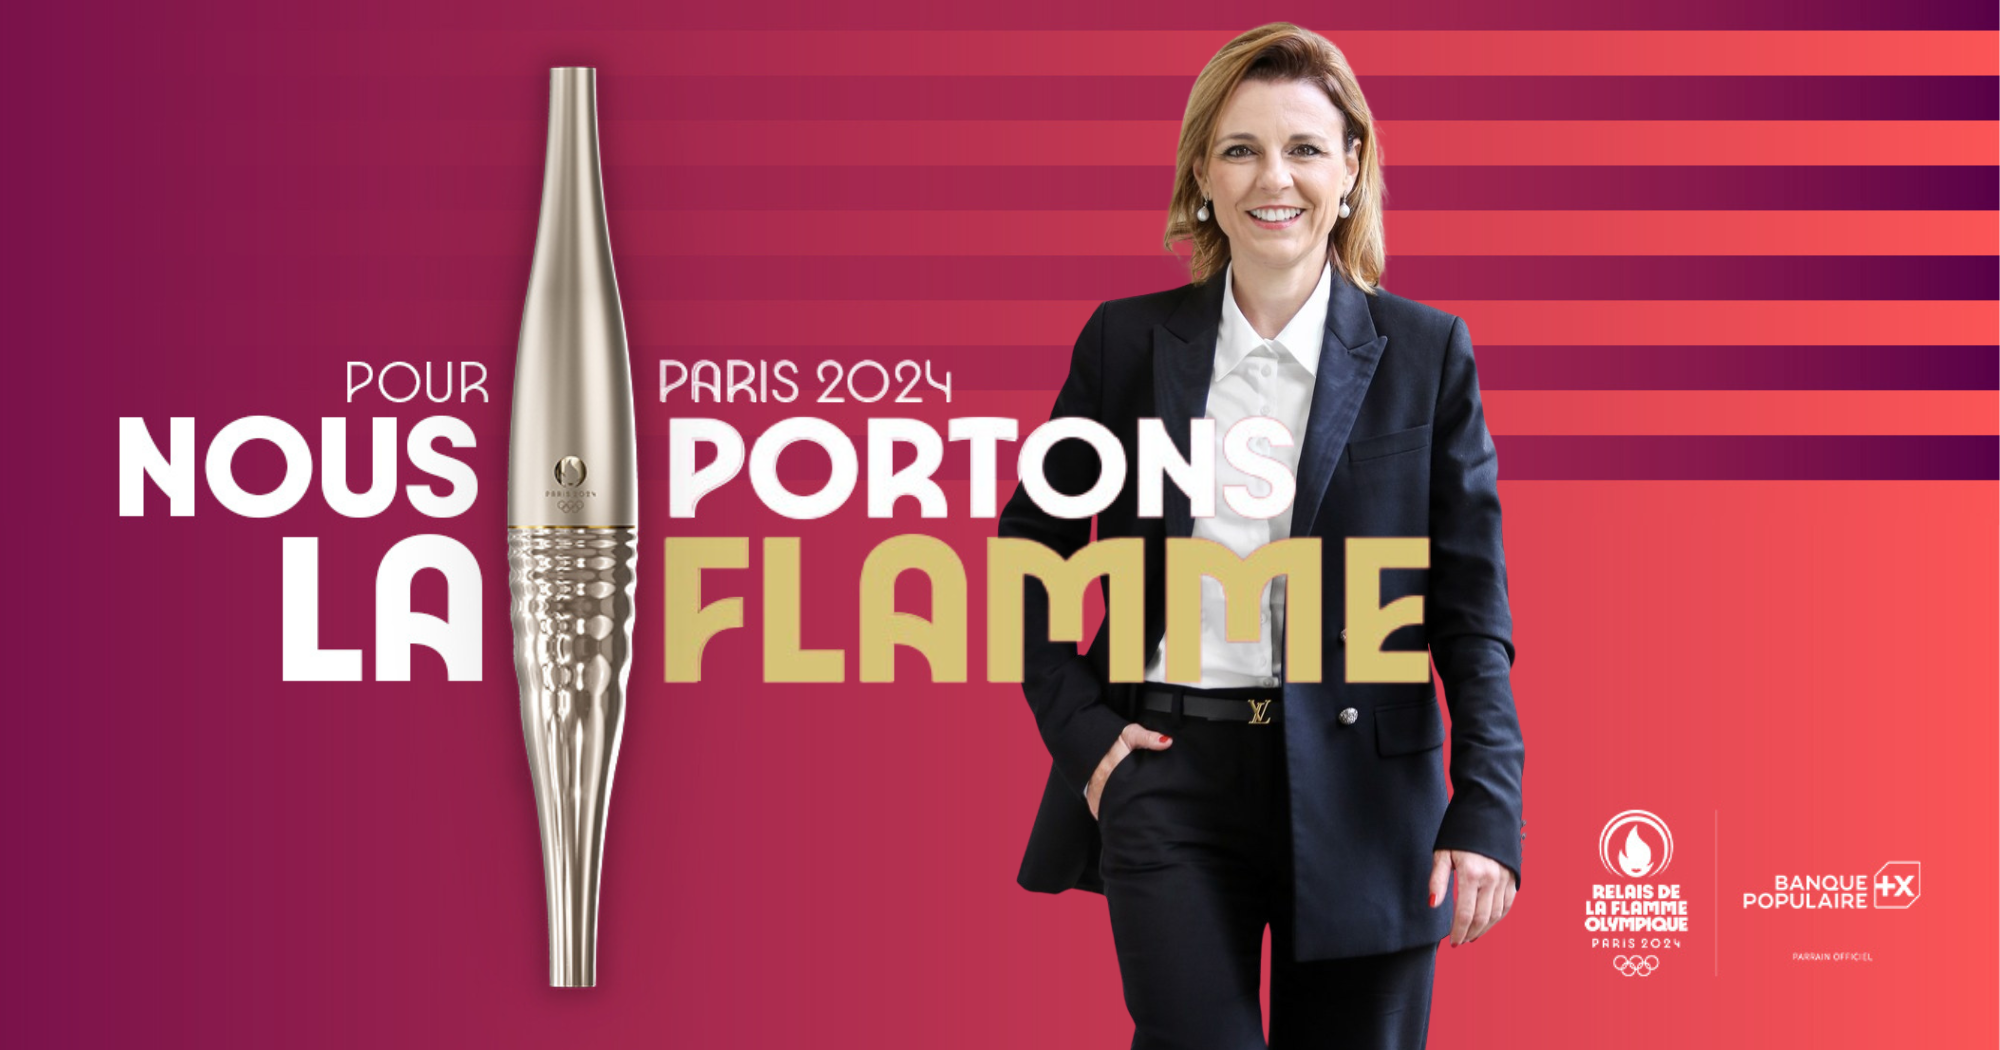 Chavin - Mathilde BOULACHIN Olympic torchbearer for Paris 2024